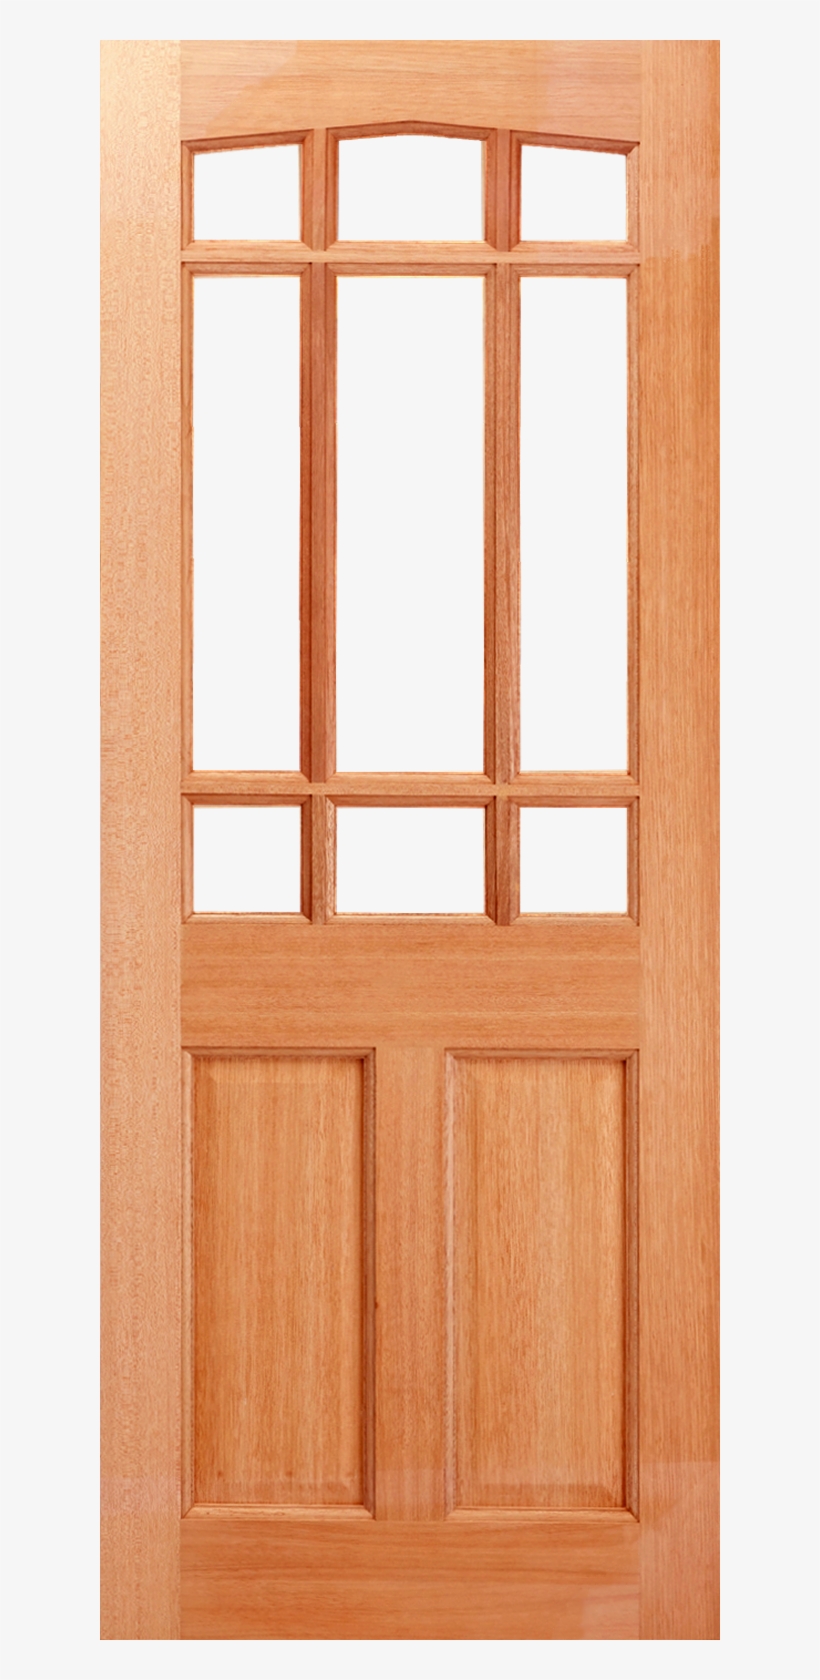 Downham Swept Head Hardwood Door Unglazed - Home Door, transparent png #3226225